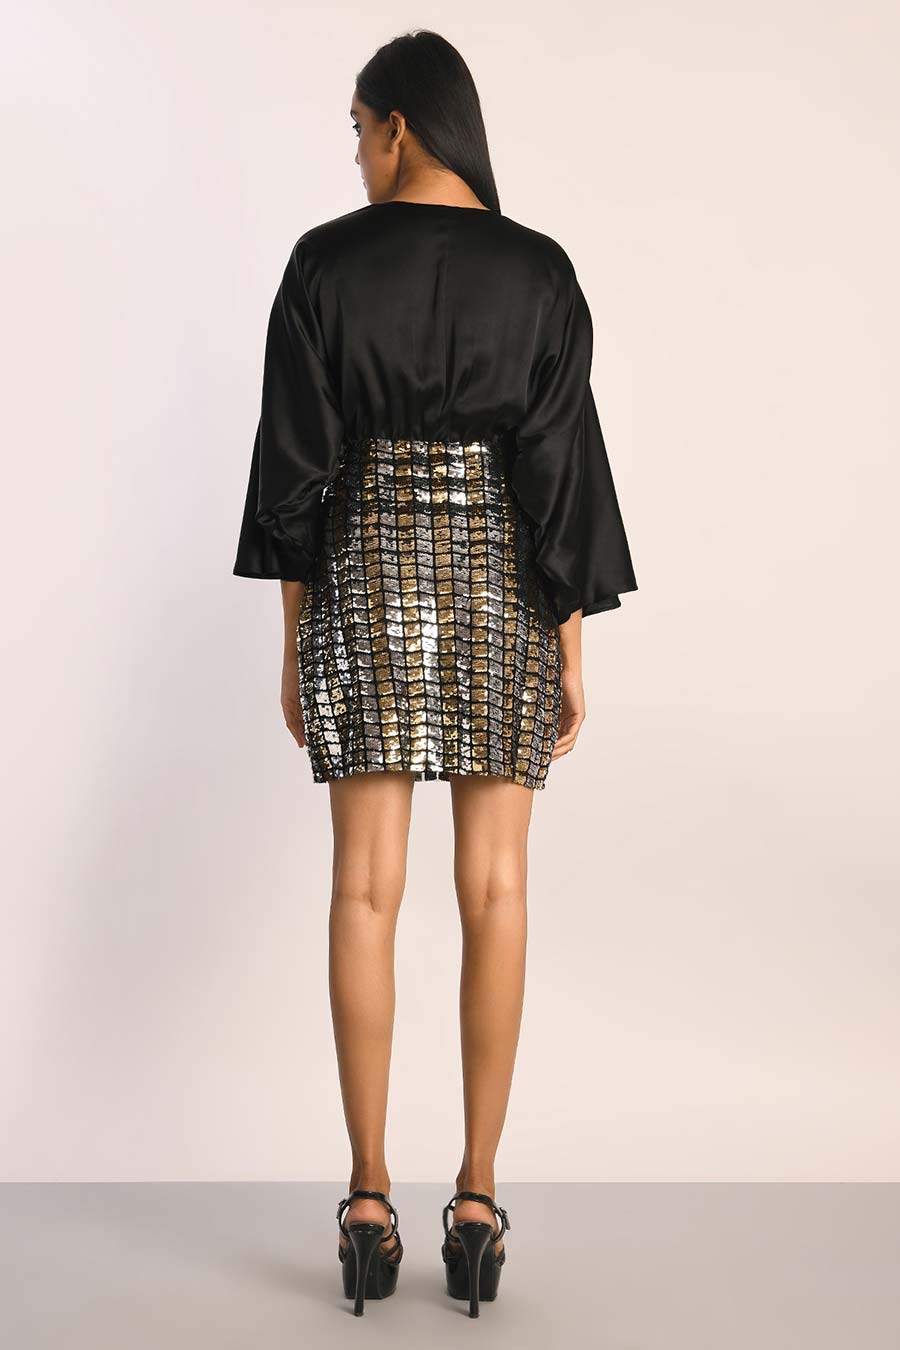 Shimmer Sequin Embellished Short Dress